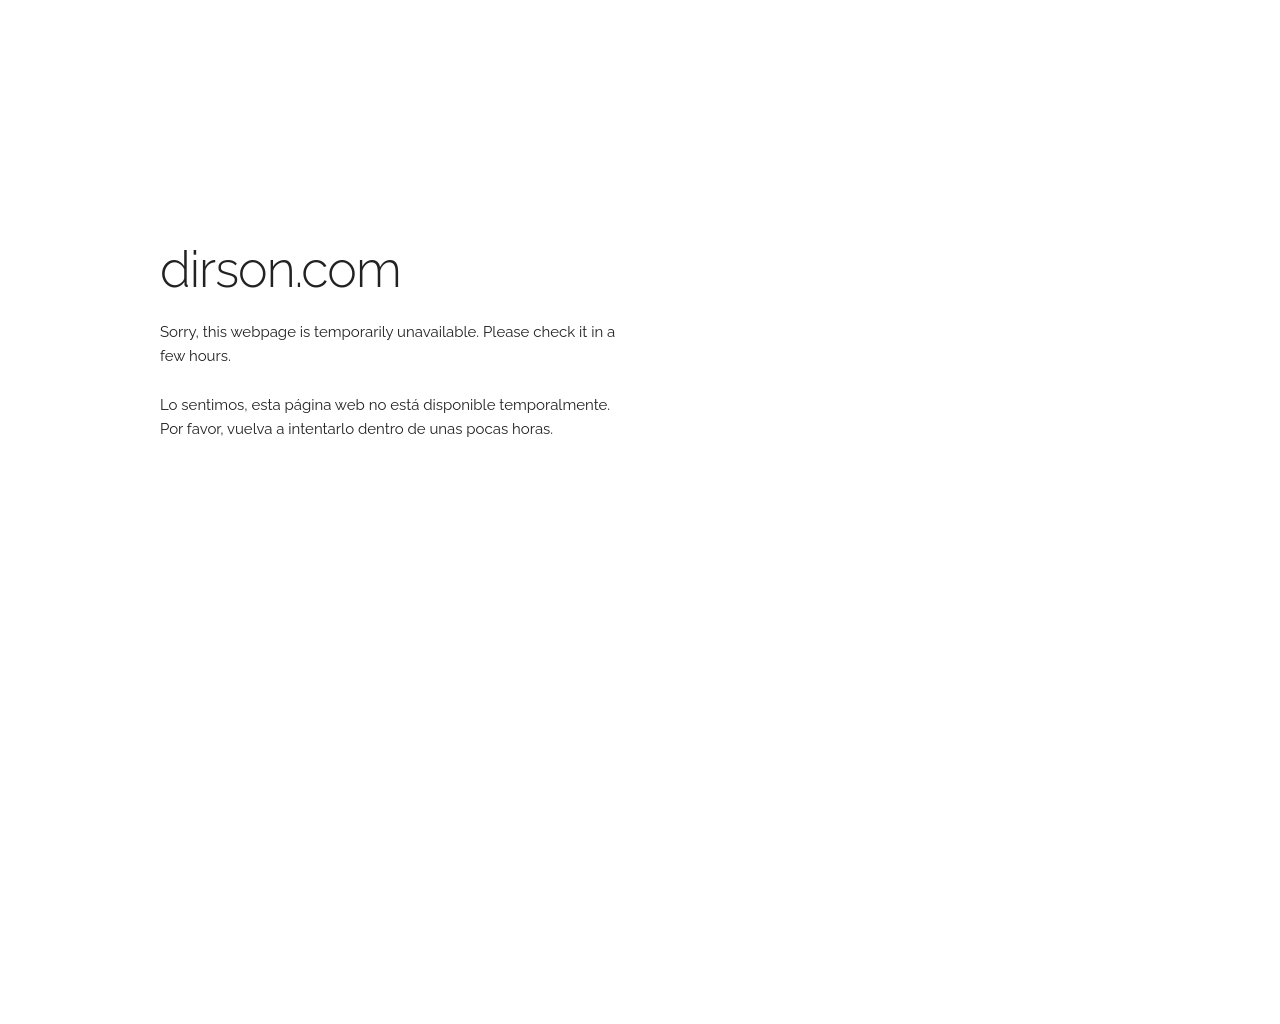 dirson.com